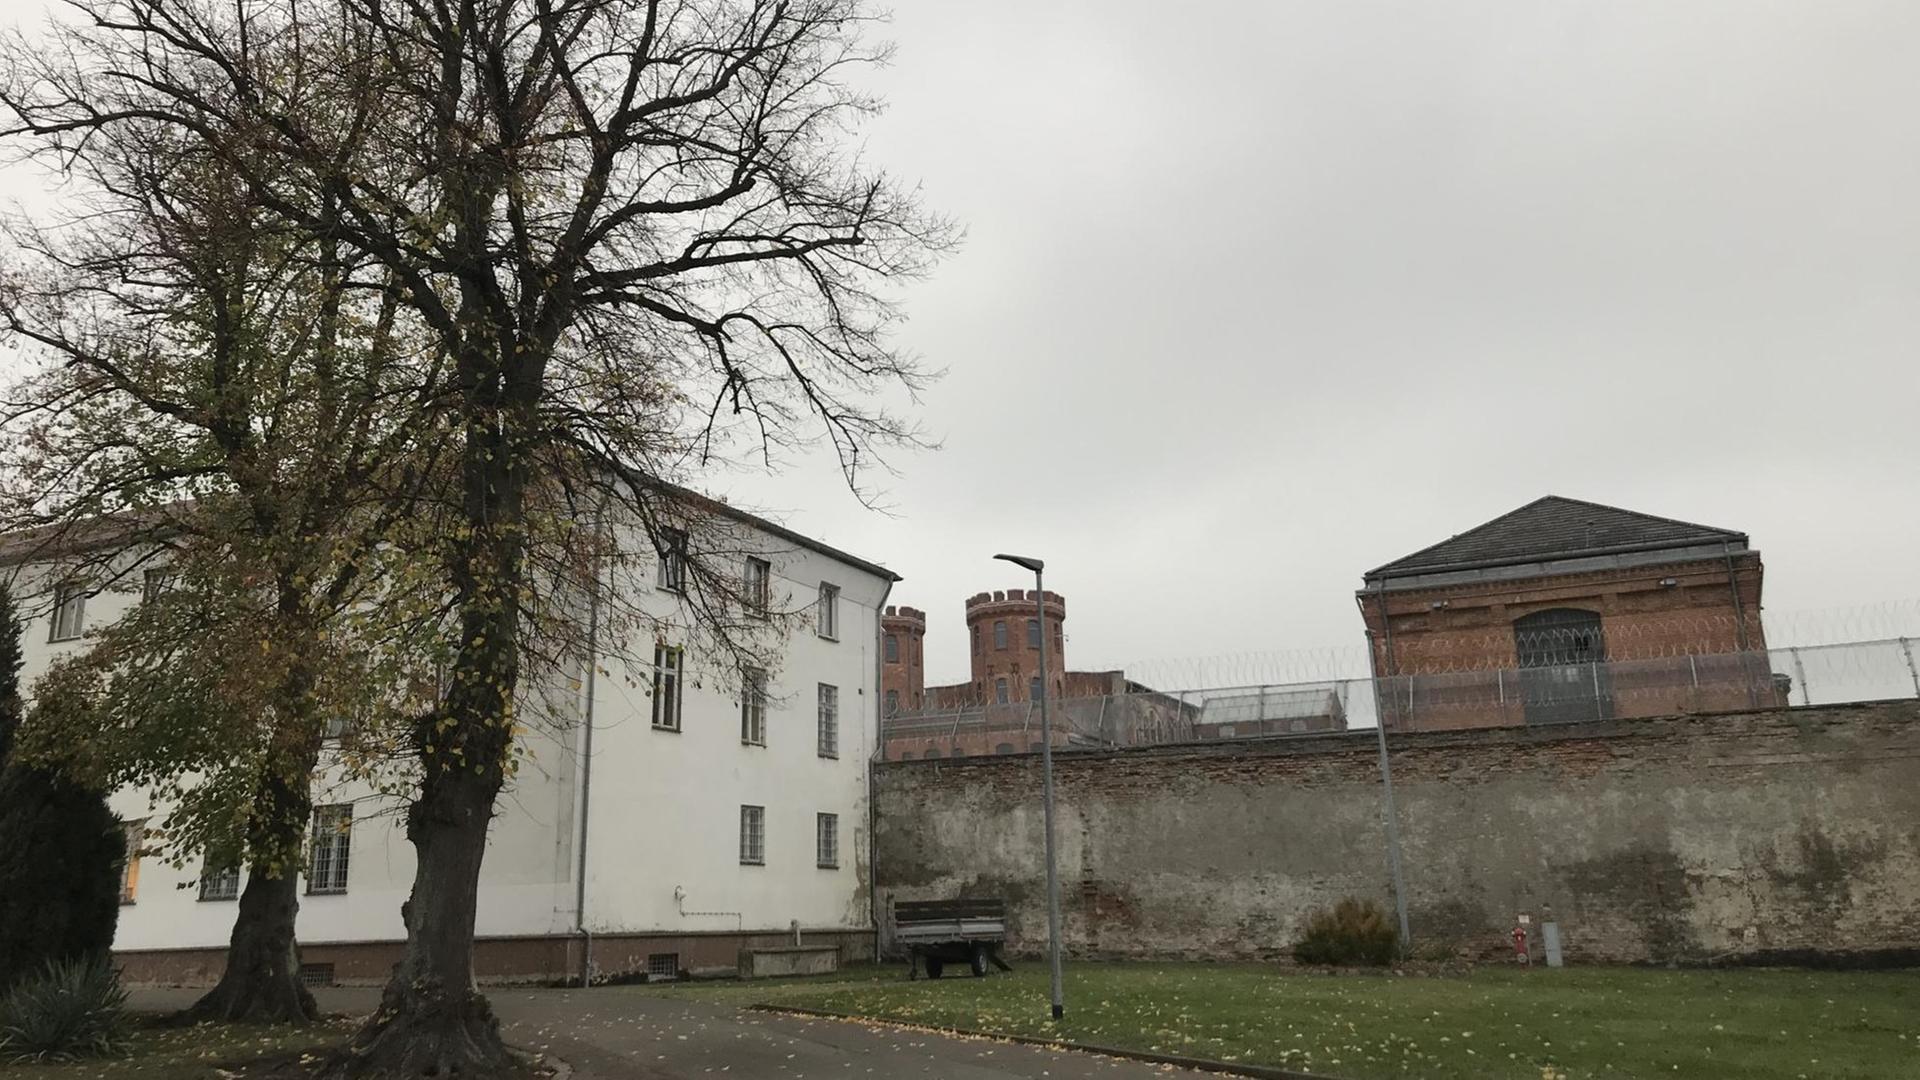 Stacheldrahlt und hohe Mauern - die JVA in Bützow in Mecklenburg-Vorpommern